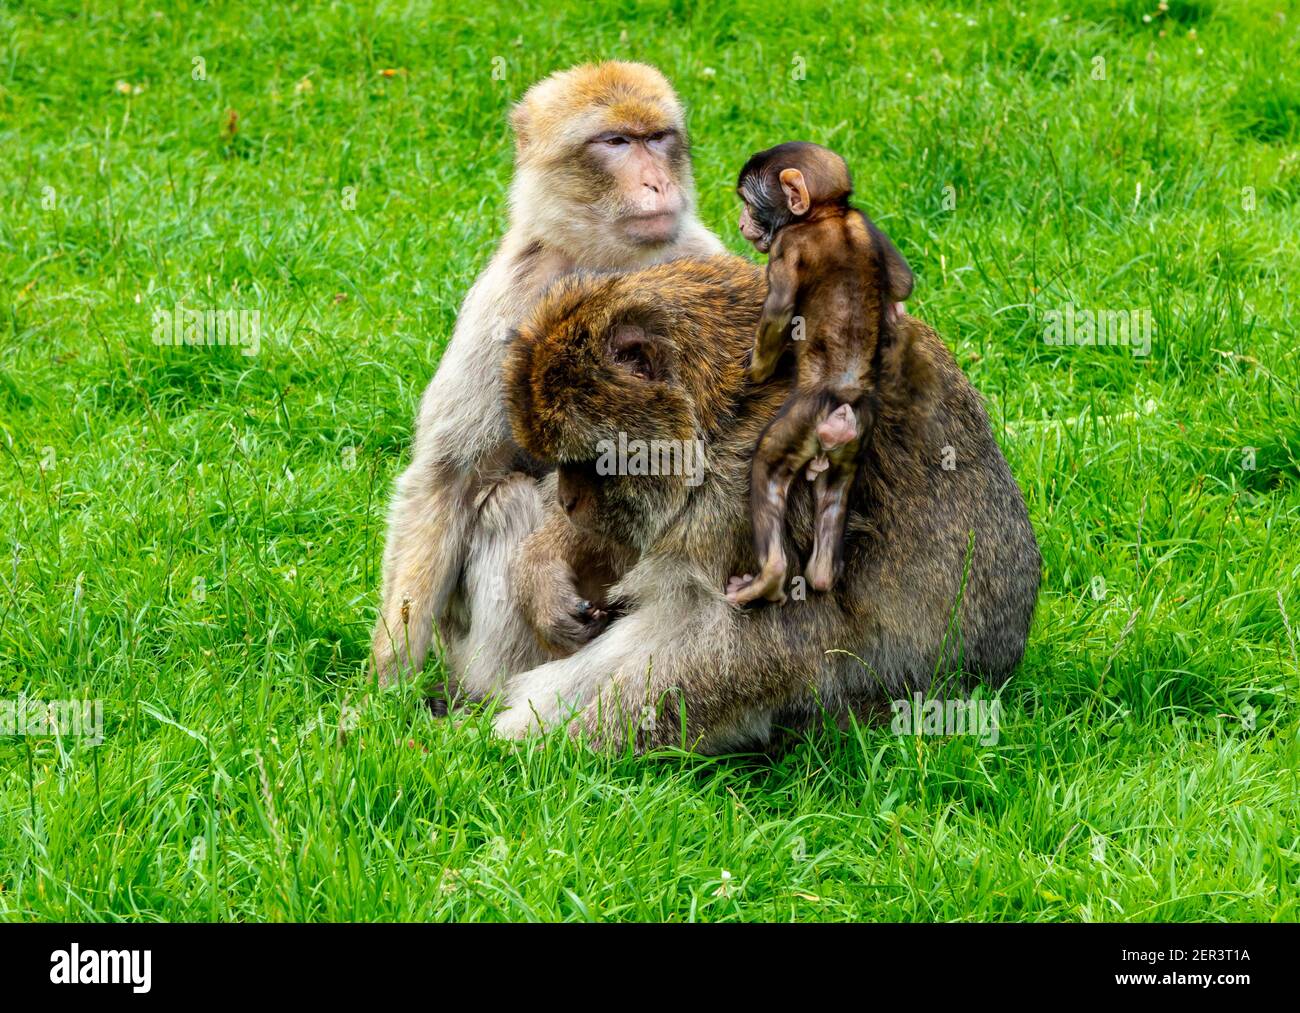 Familie barbary Makaken Affen mit jungen in Gefangenschaft bei Monkey Wald in Trentham Staffordshire England Großbritannien Stockfoto